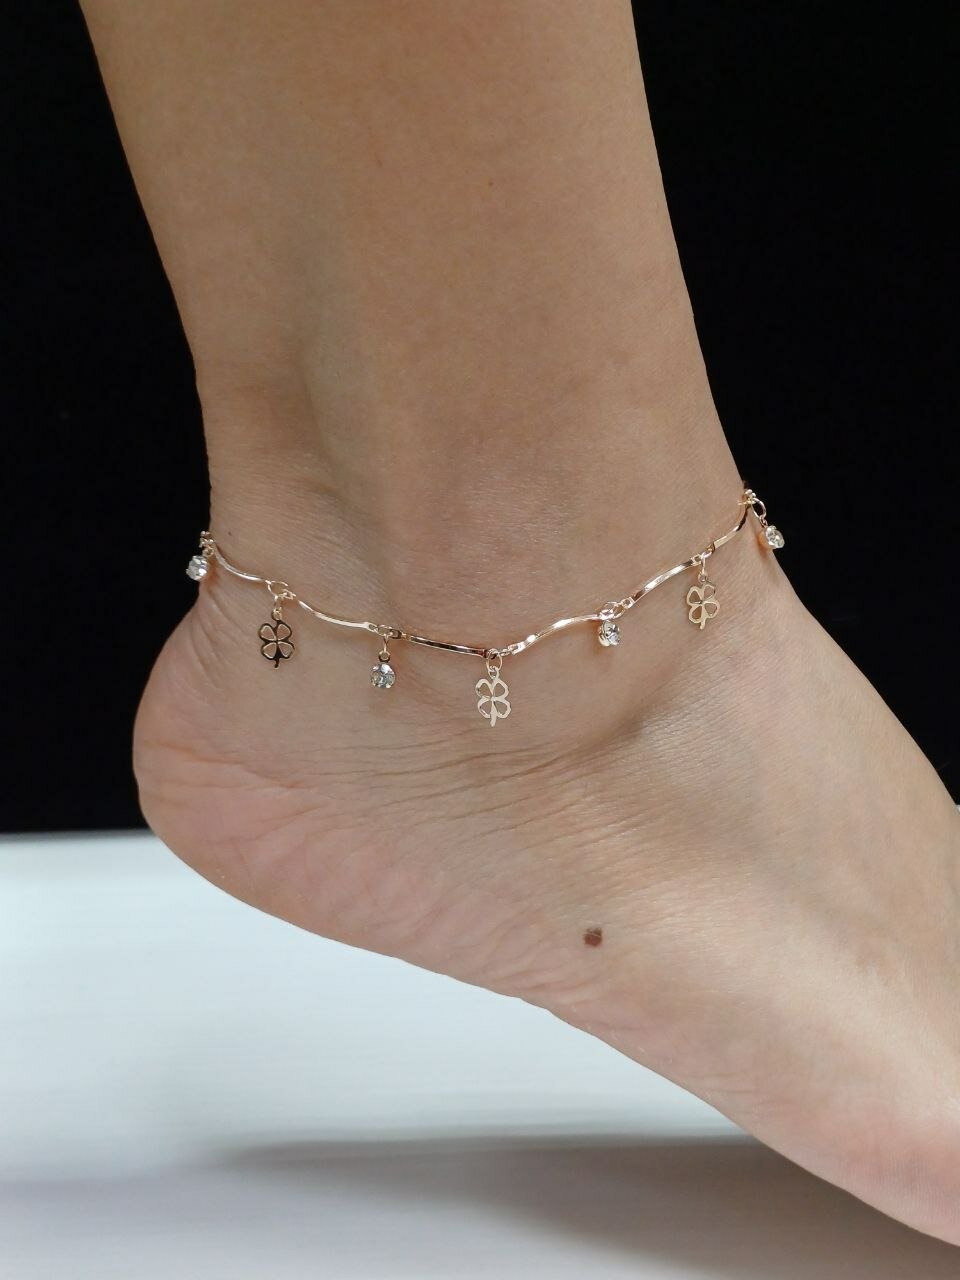 Браслет-цепочка Анклет бижутерия на ногу Дубайское золото бижутерия; анклет бижутерия;